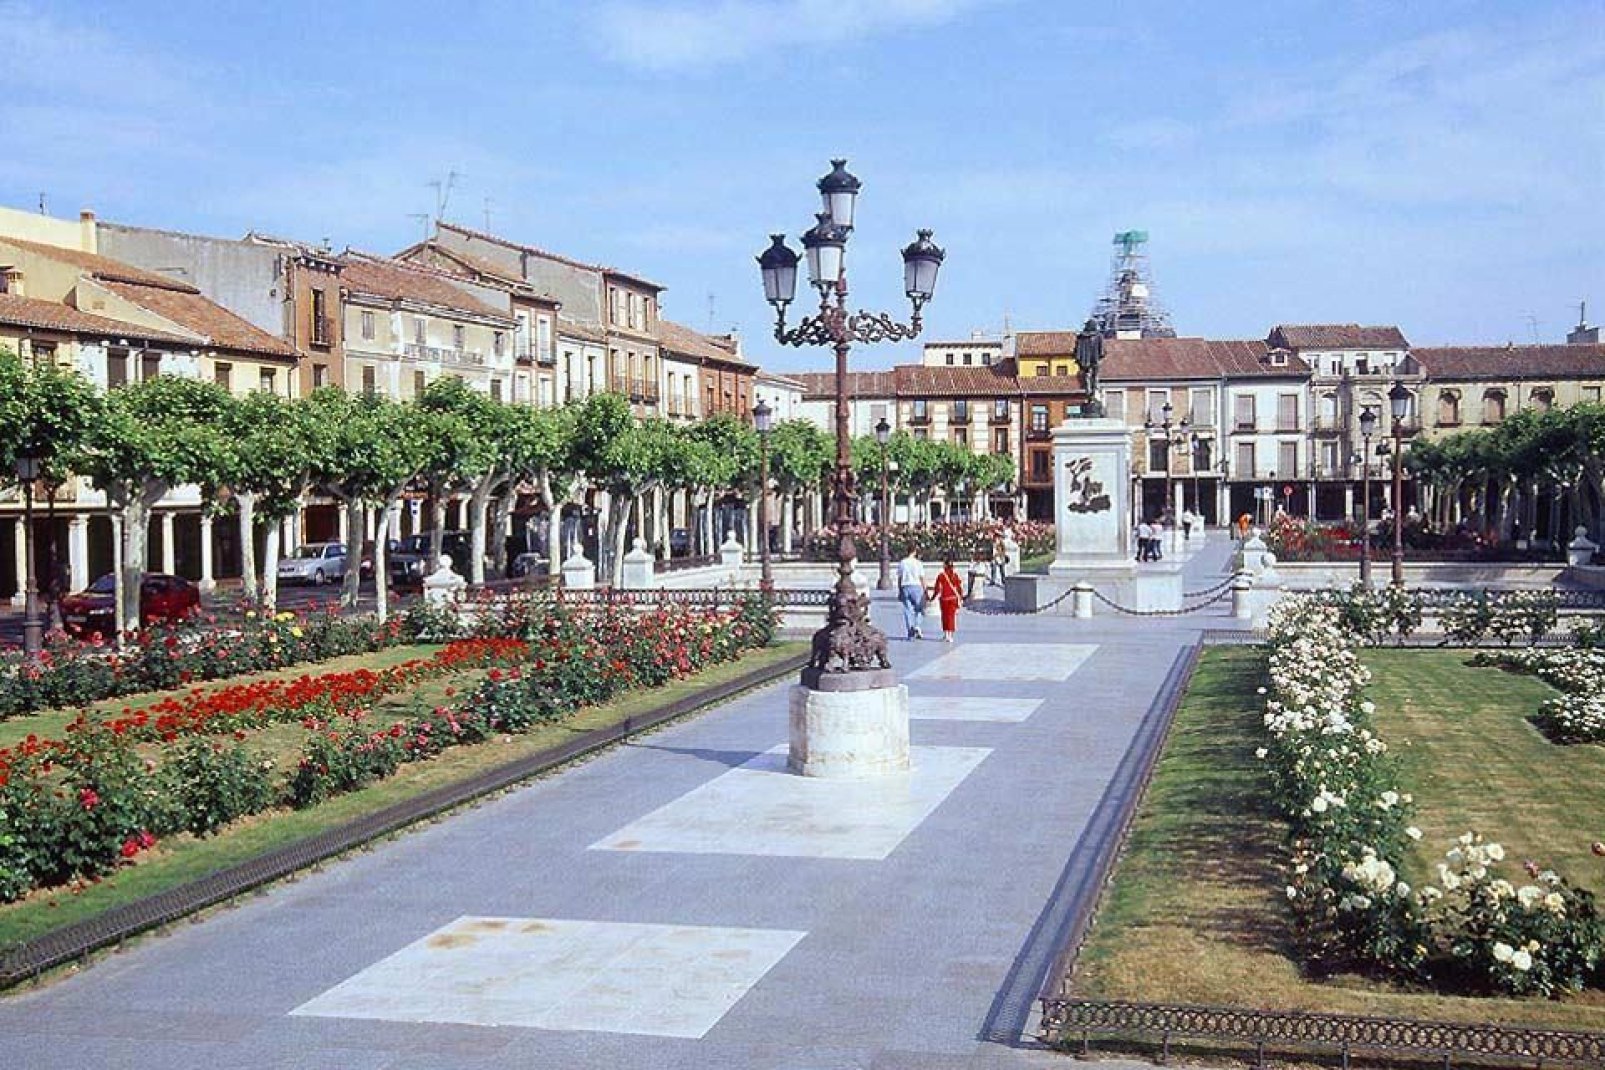 Dieser Platz ist das Zentrum der Stadt Alcala de Henares. In der Mitte thront eine Statue von Don Quichotte, denn es handelt sich um die Geburtsstadt des Schriftstellers Miguel de Cervantes.